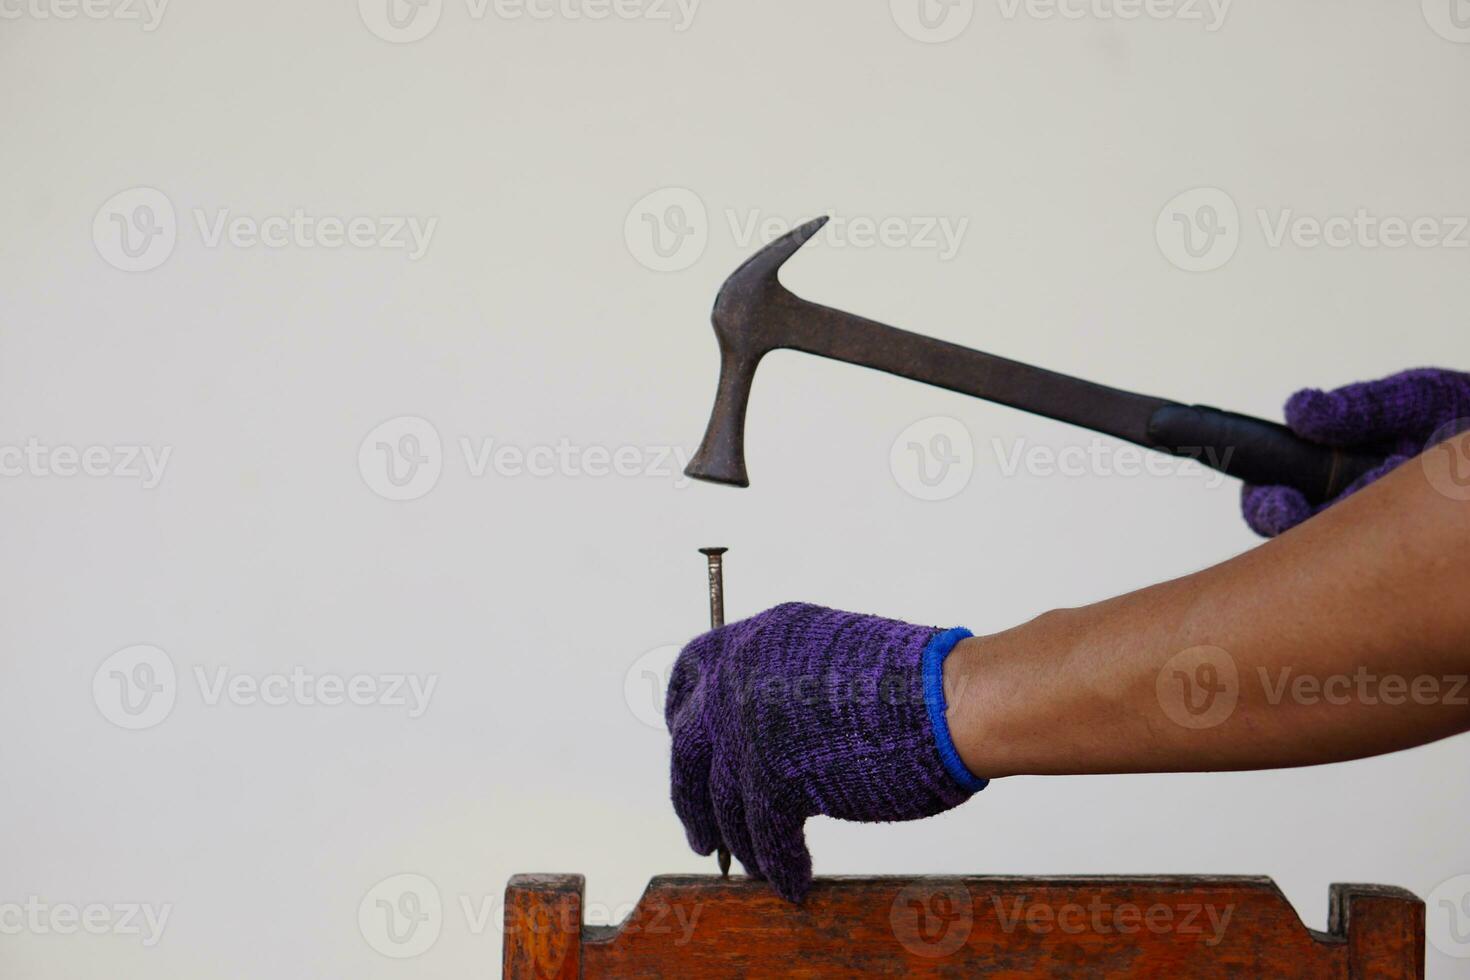 la mano del carpintero de primer plano usa un martillo para golpear el clavo. concepto, herramientas de carpintería y construcción. reparación o arreglo, carpintería bricolaje. foto